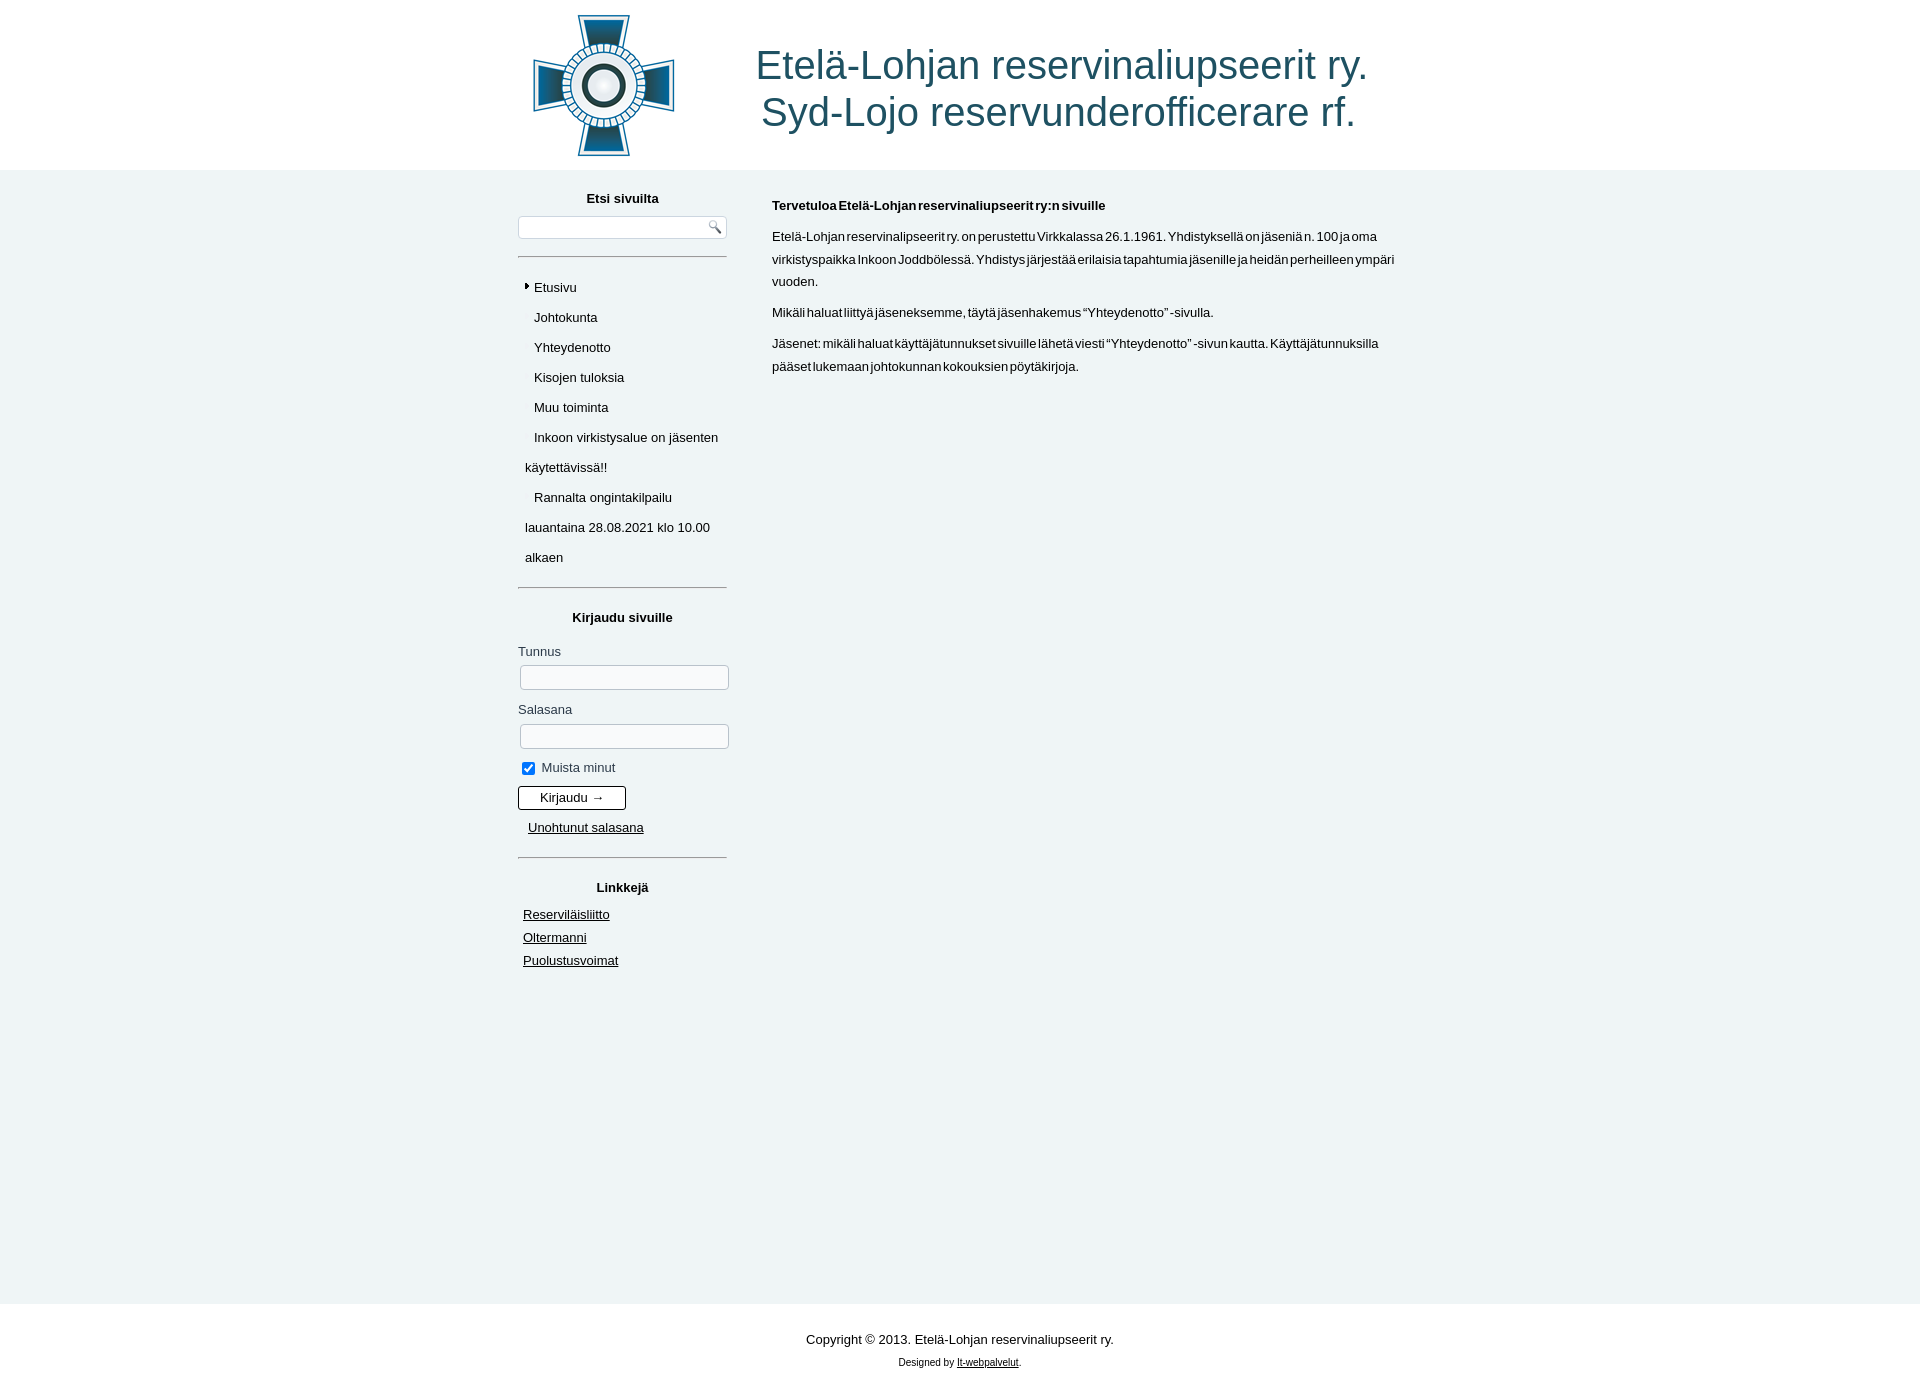 Skärmdump för etela-lohjanreservinaliupseerit.fi